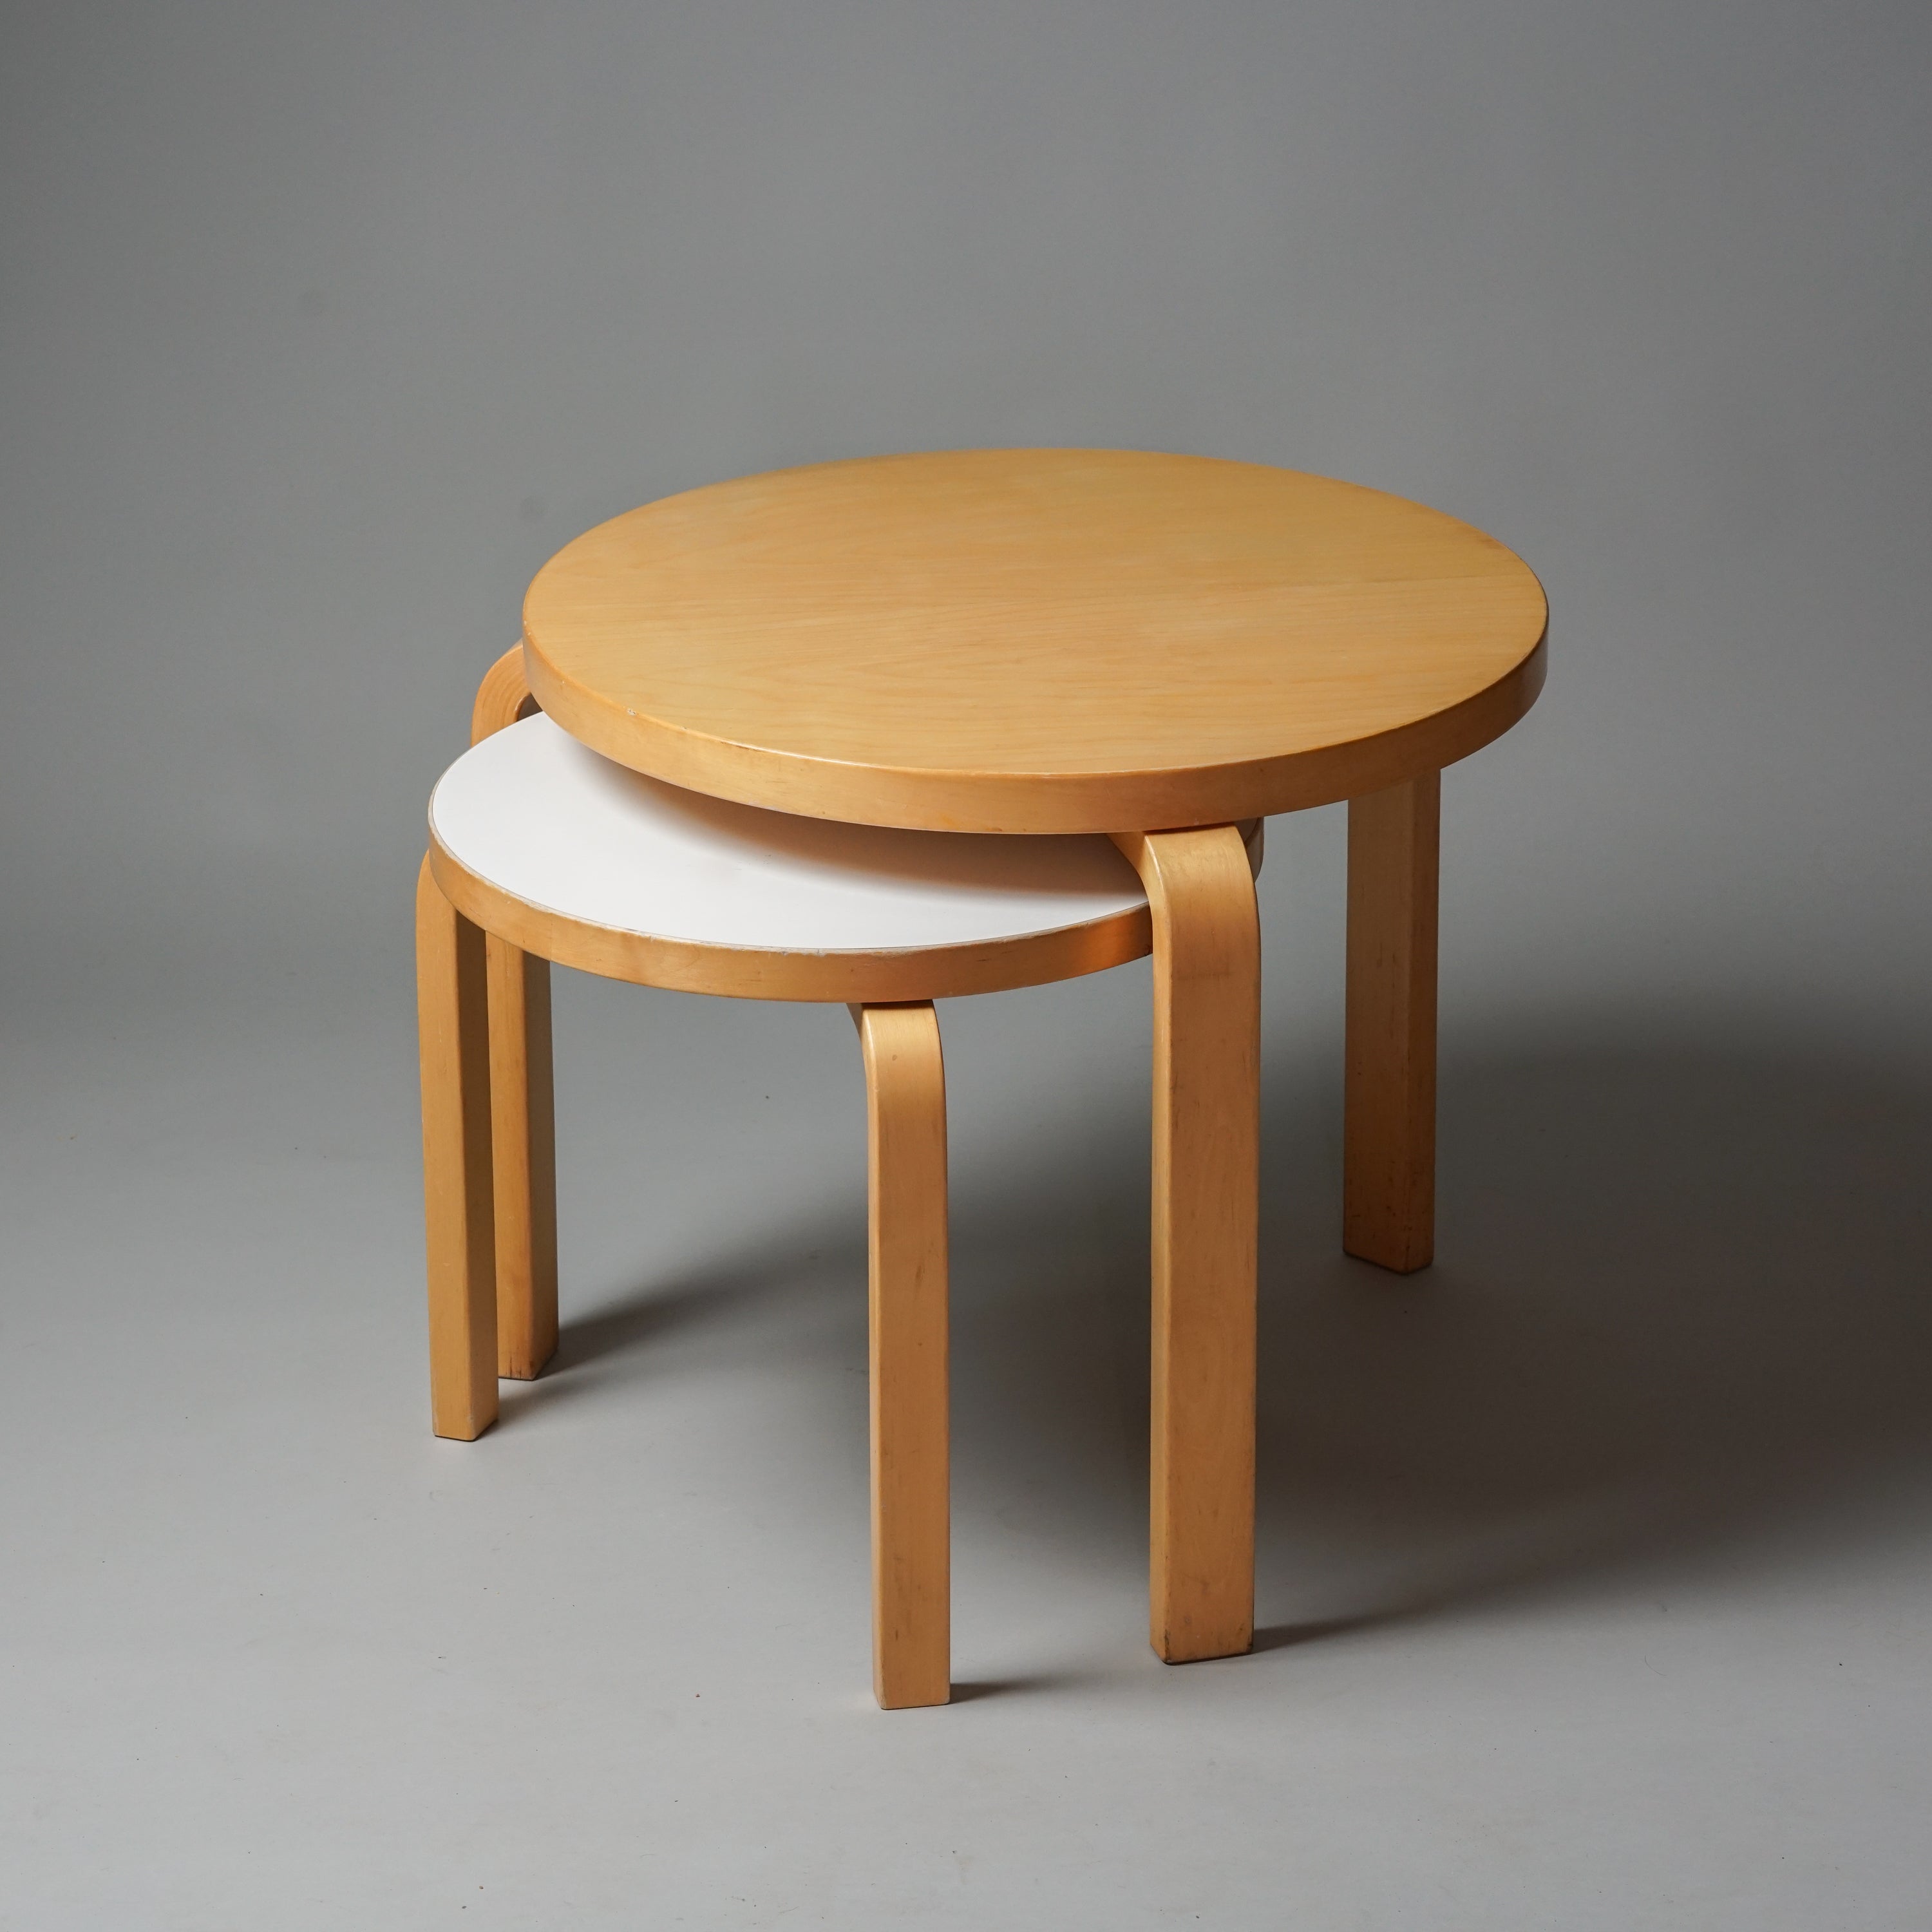 Kaksi pyöreää pöytää, jotka ovat tehty koivusta ja joissa on kolme jalkaa. Pienemmässä pöydässä on valkoinen linoleumi päällinen. 